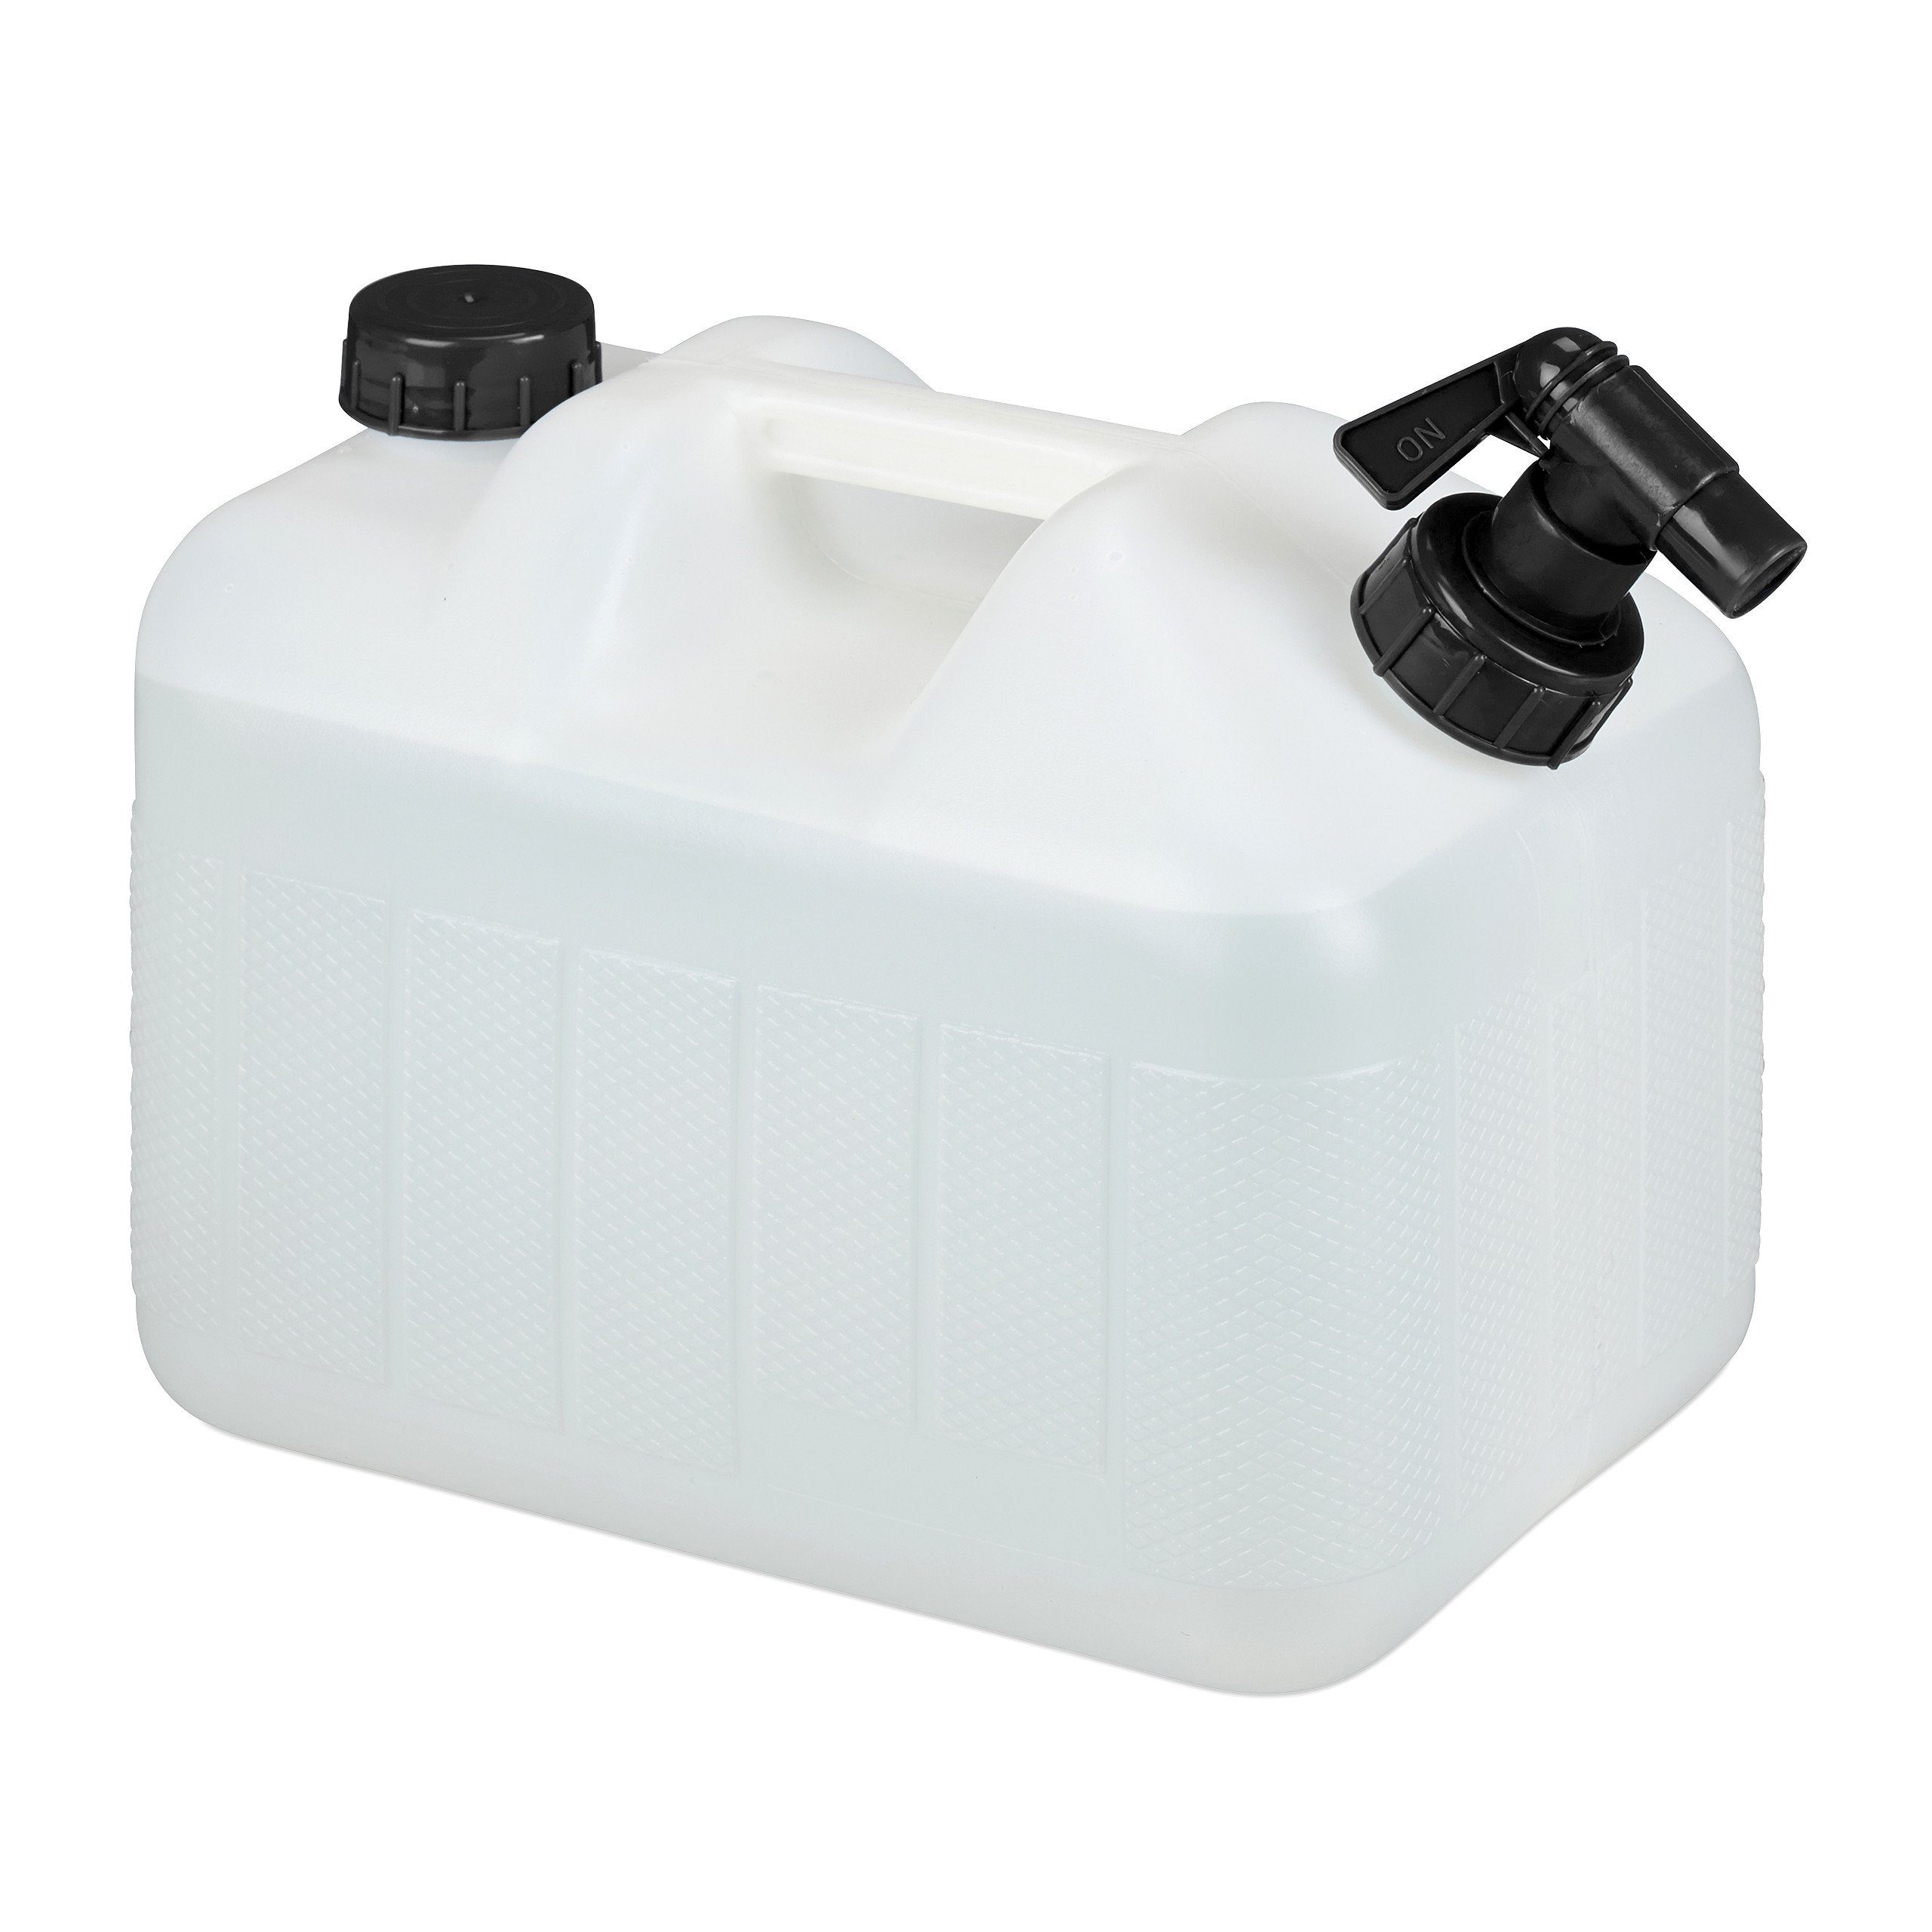 Wasserkanister 10L Profi 10 Liter aus HD-PE Lebensmittelecht mit Hahn